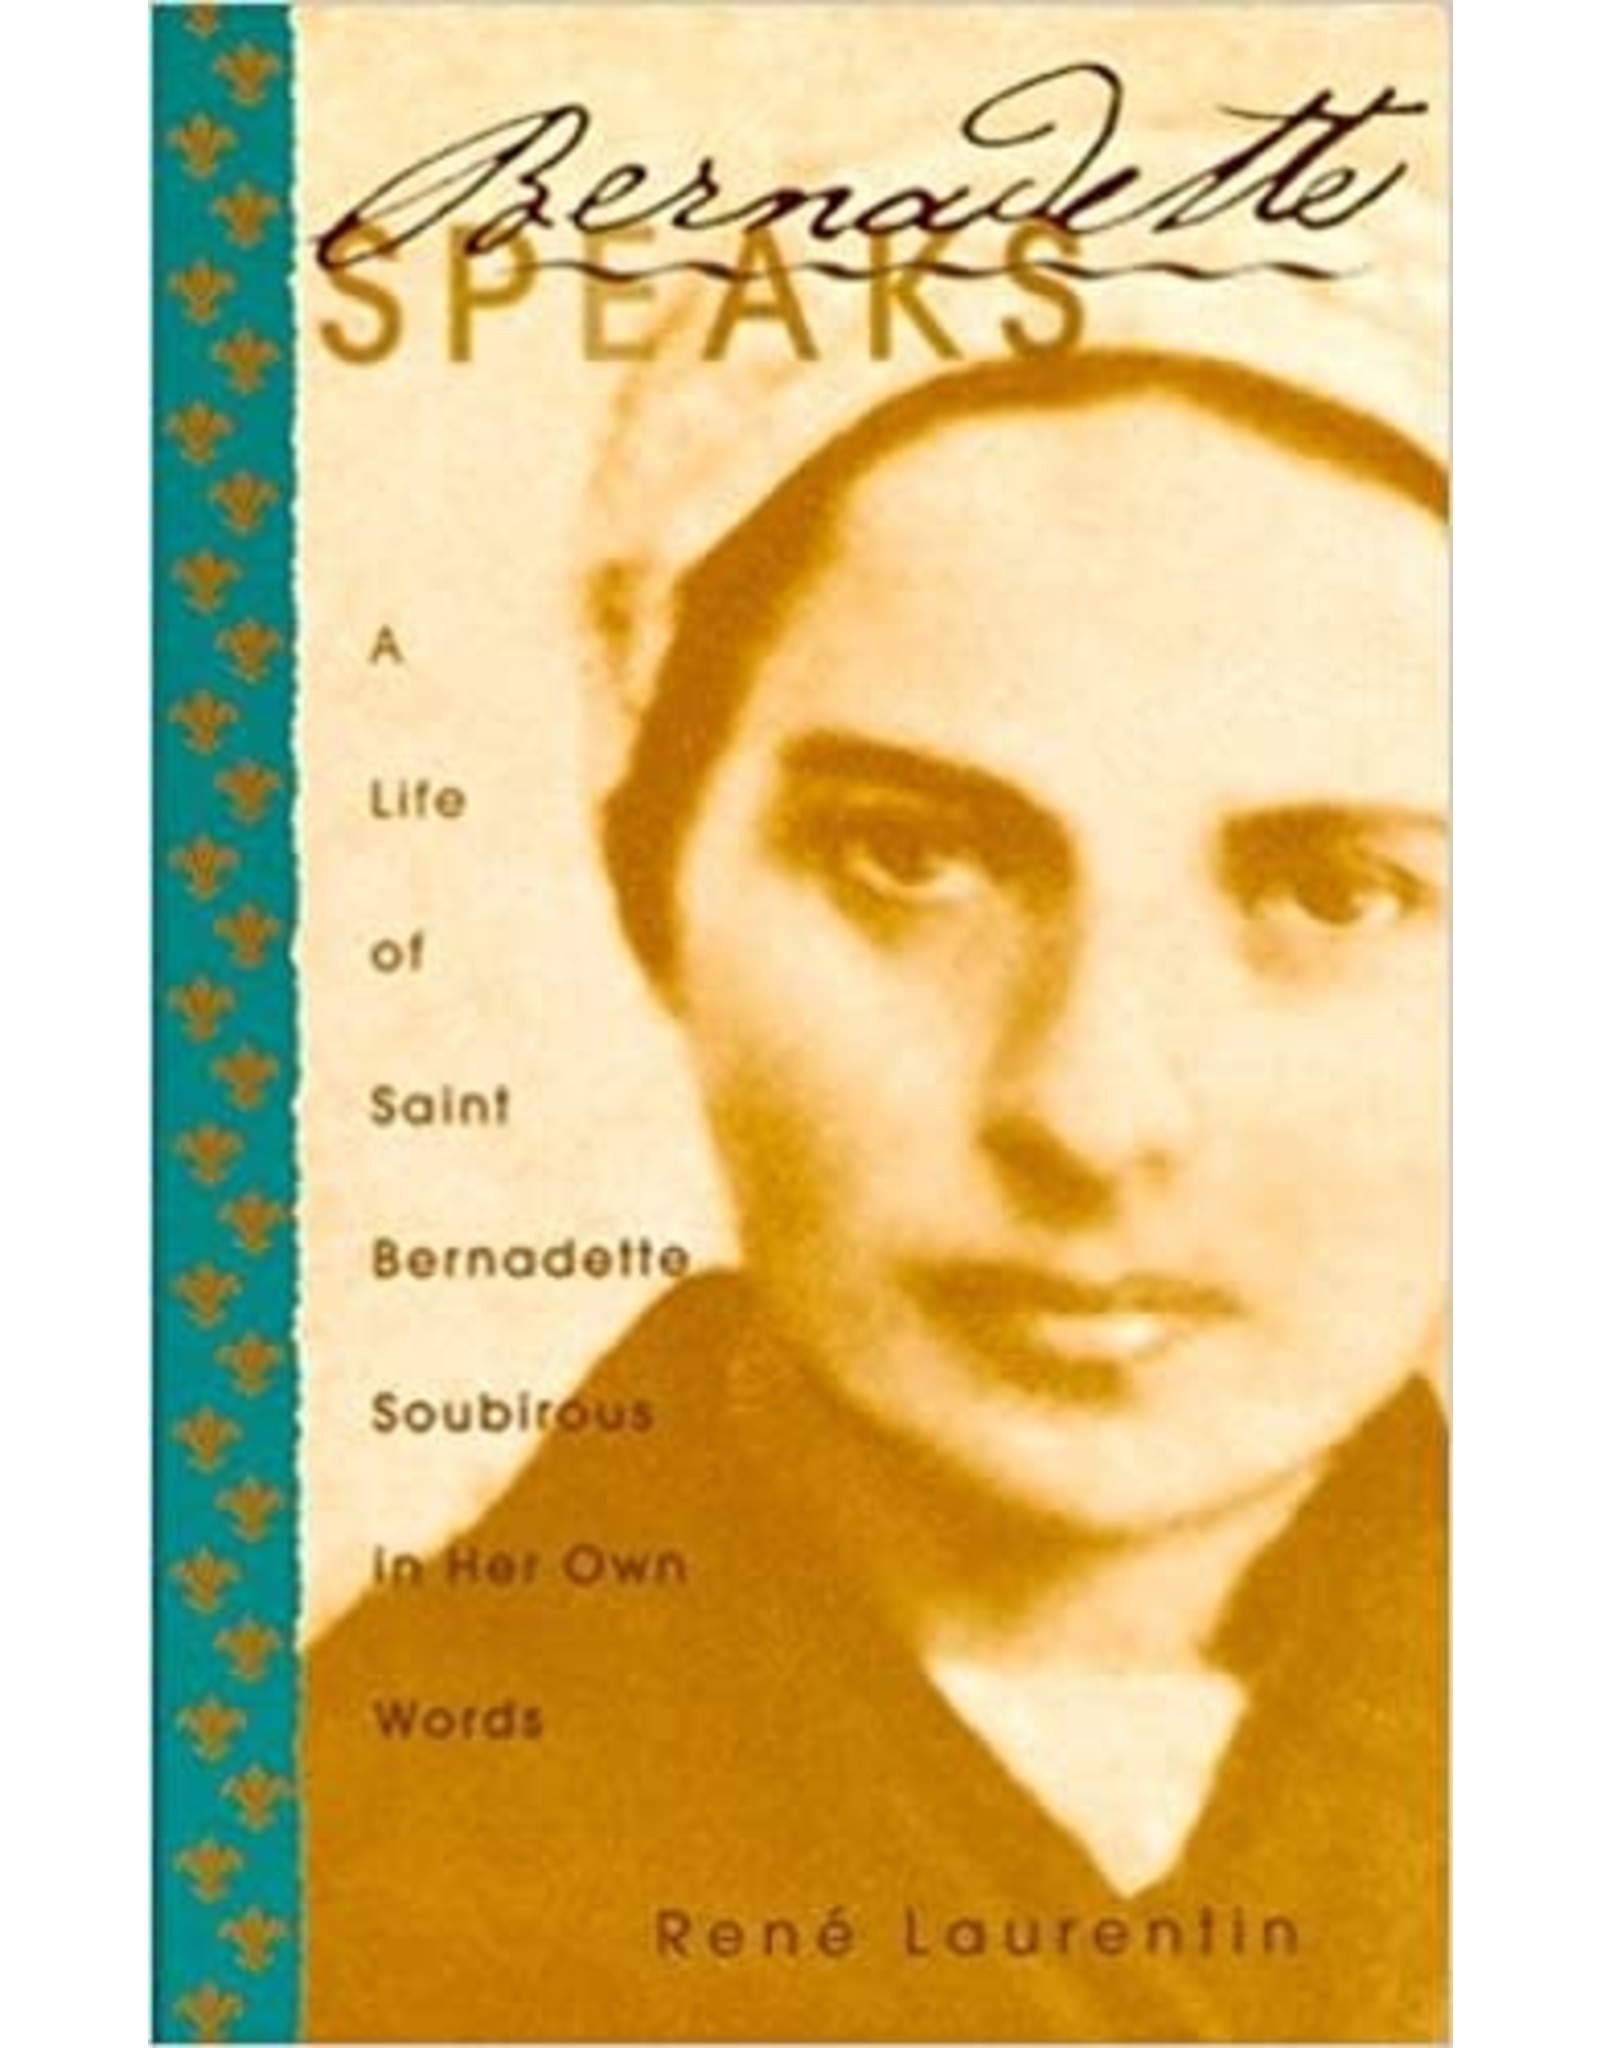 Bernadette Speaks: A Life of St. Bernadette Soubirous in Her Own Words